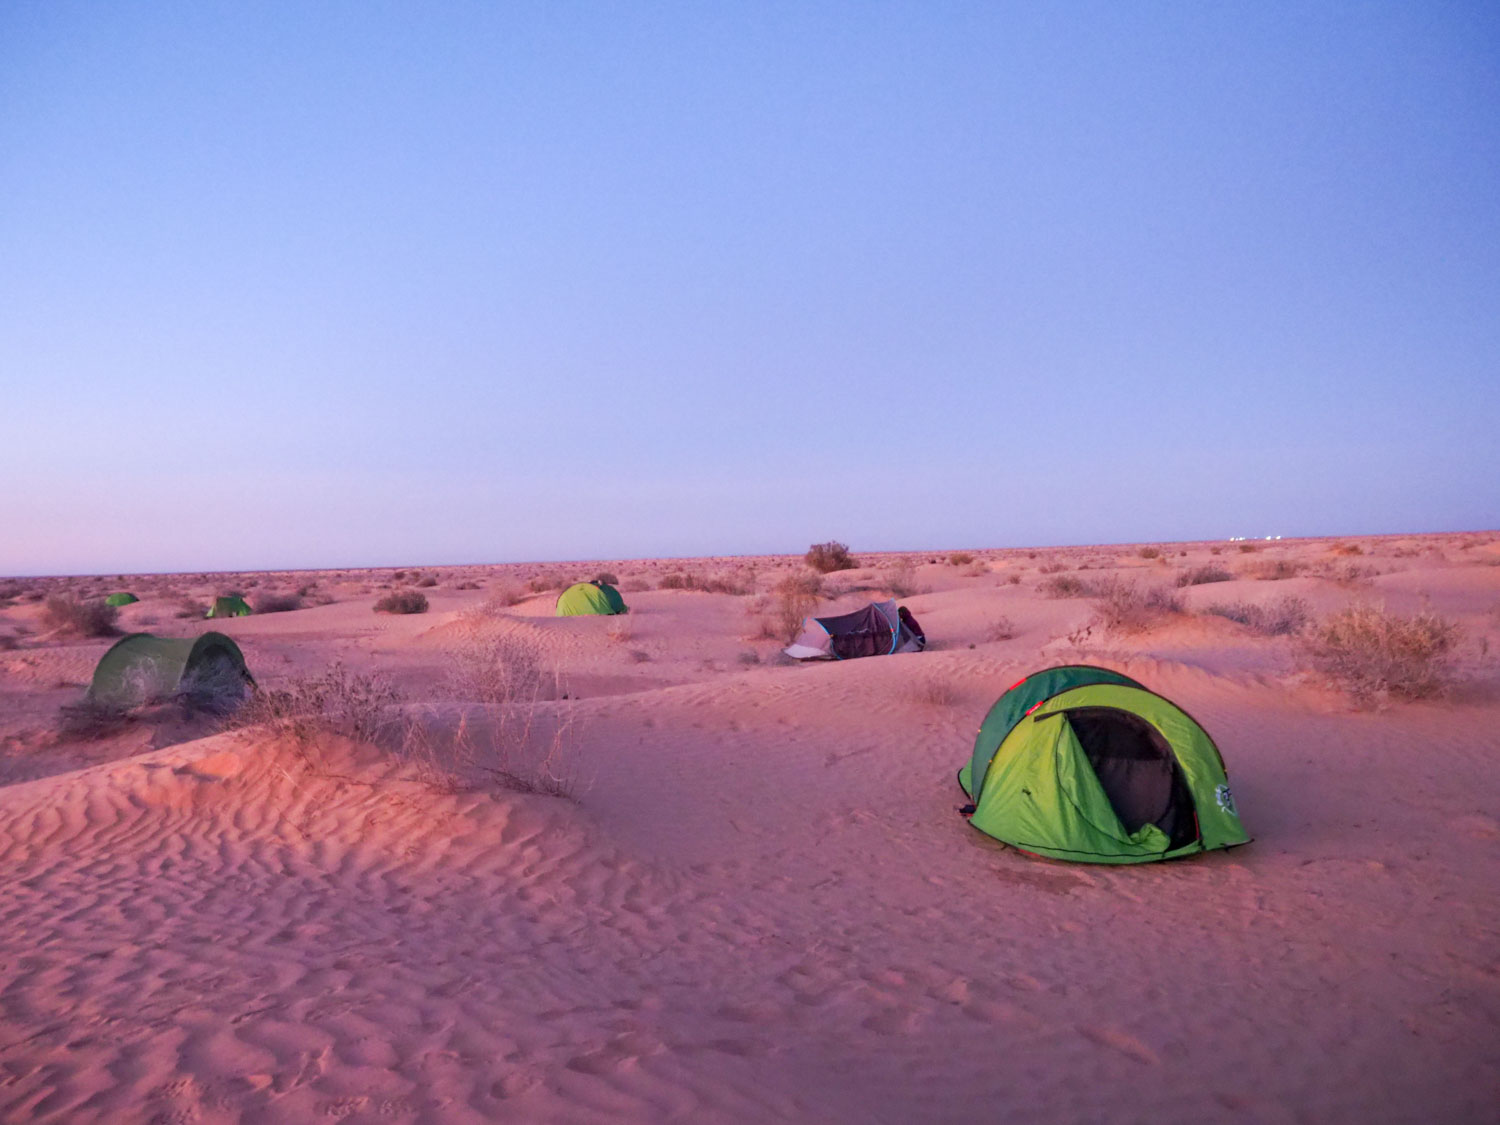 夕暮れ時には砂漠の見晴らしのいい場所を探してテント設営。